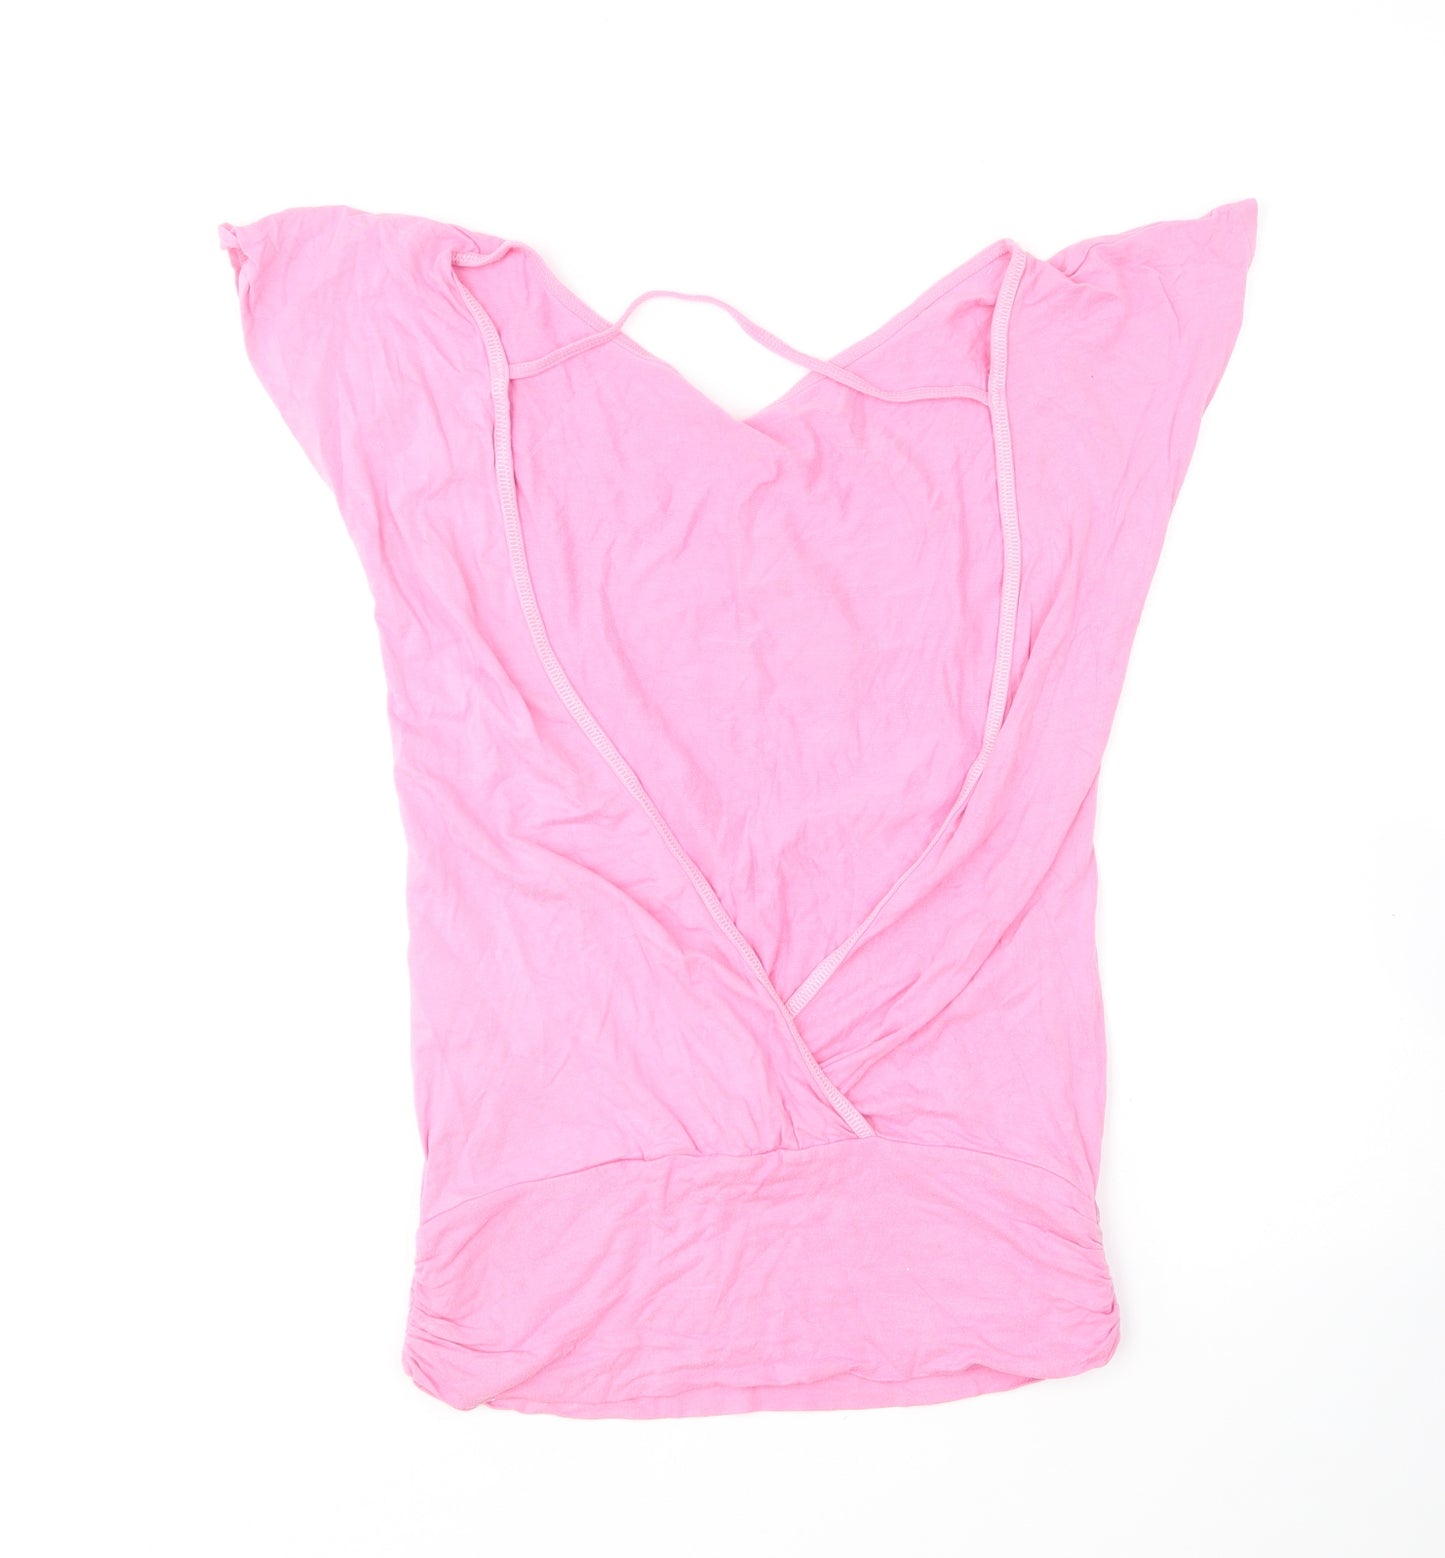 Golddigga Womens Pink Viscose Pullover T-Shirt Size M Boat Neck